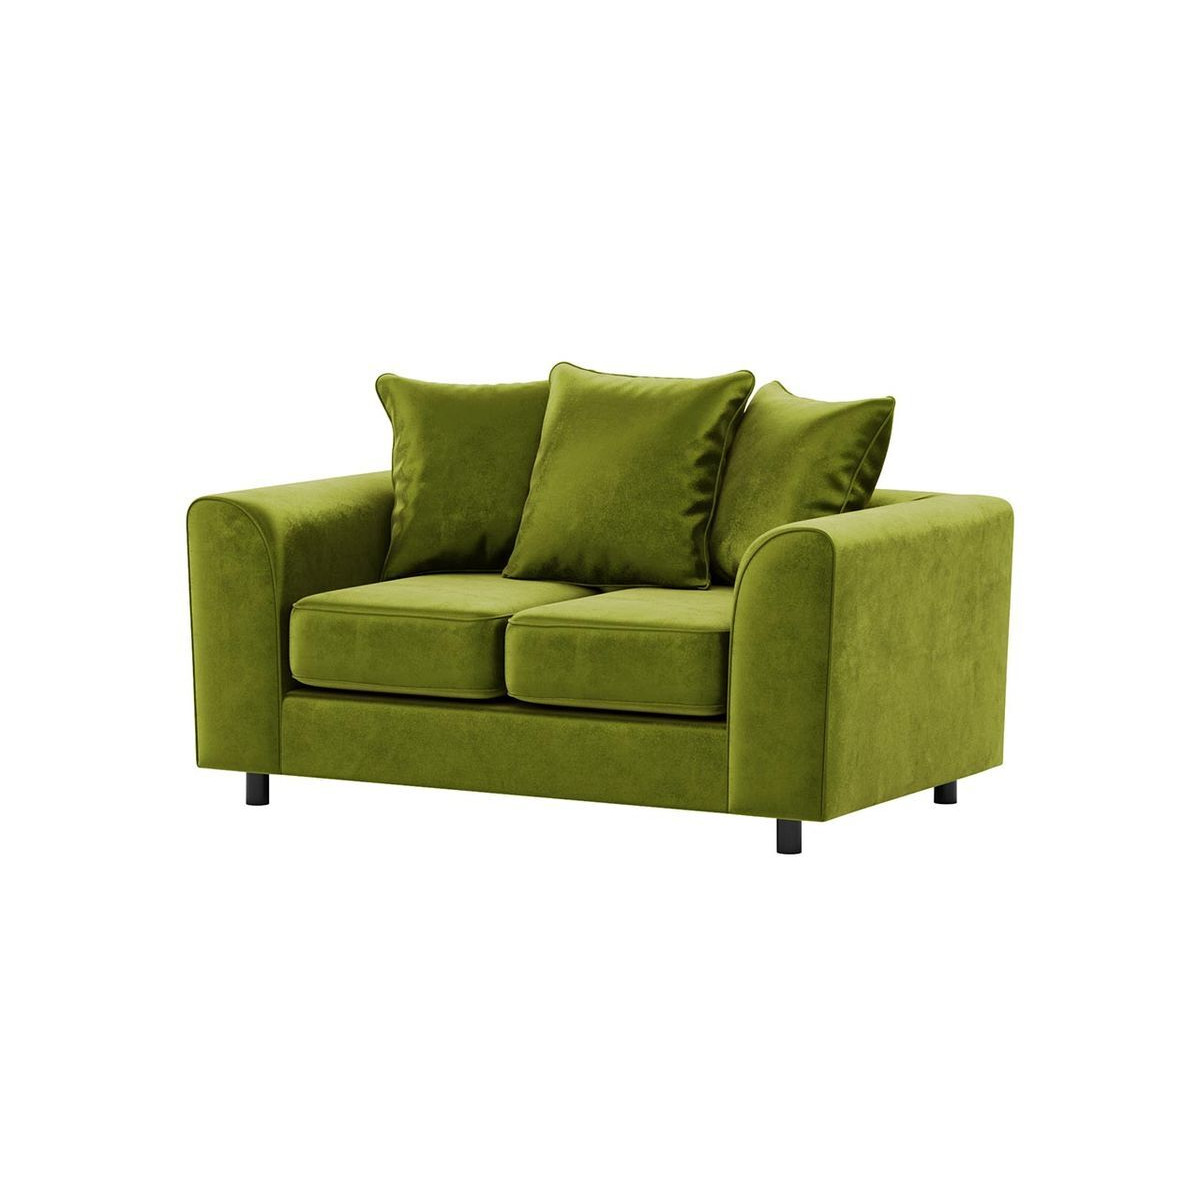 Dillon Velvet 2 Seater Sofa Bed, olive green - image 1